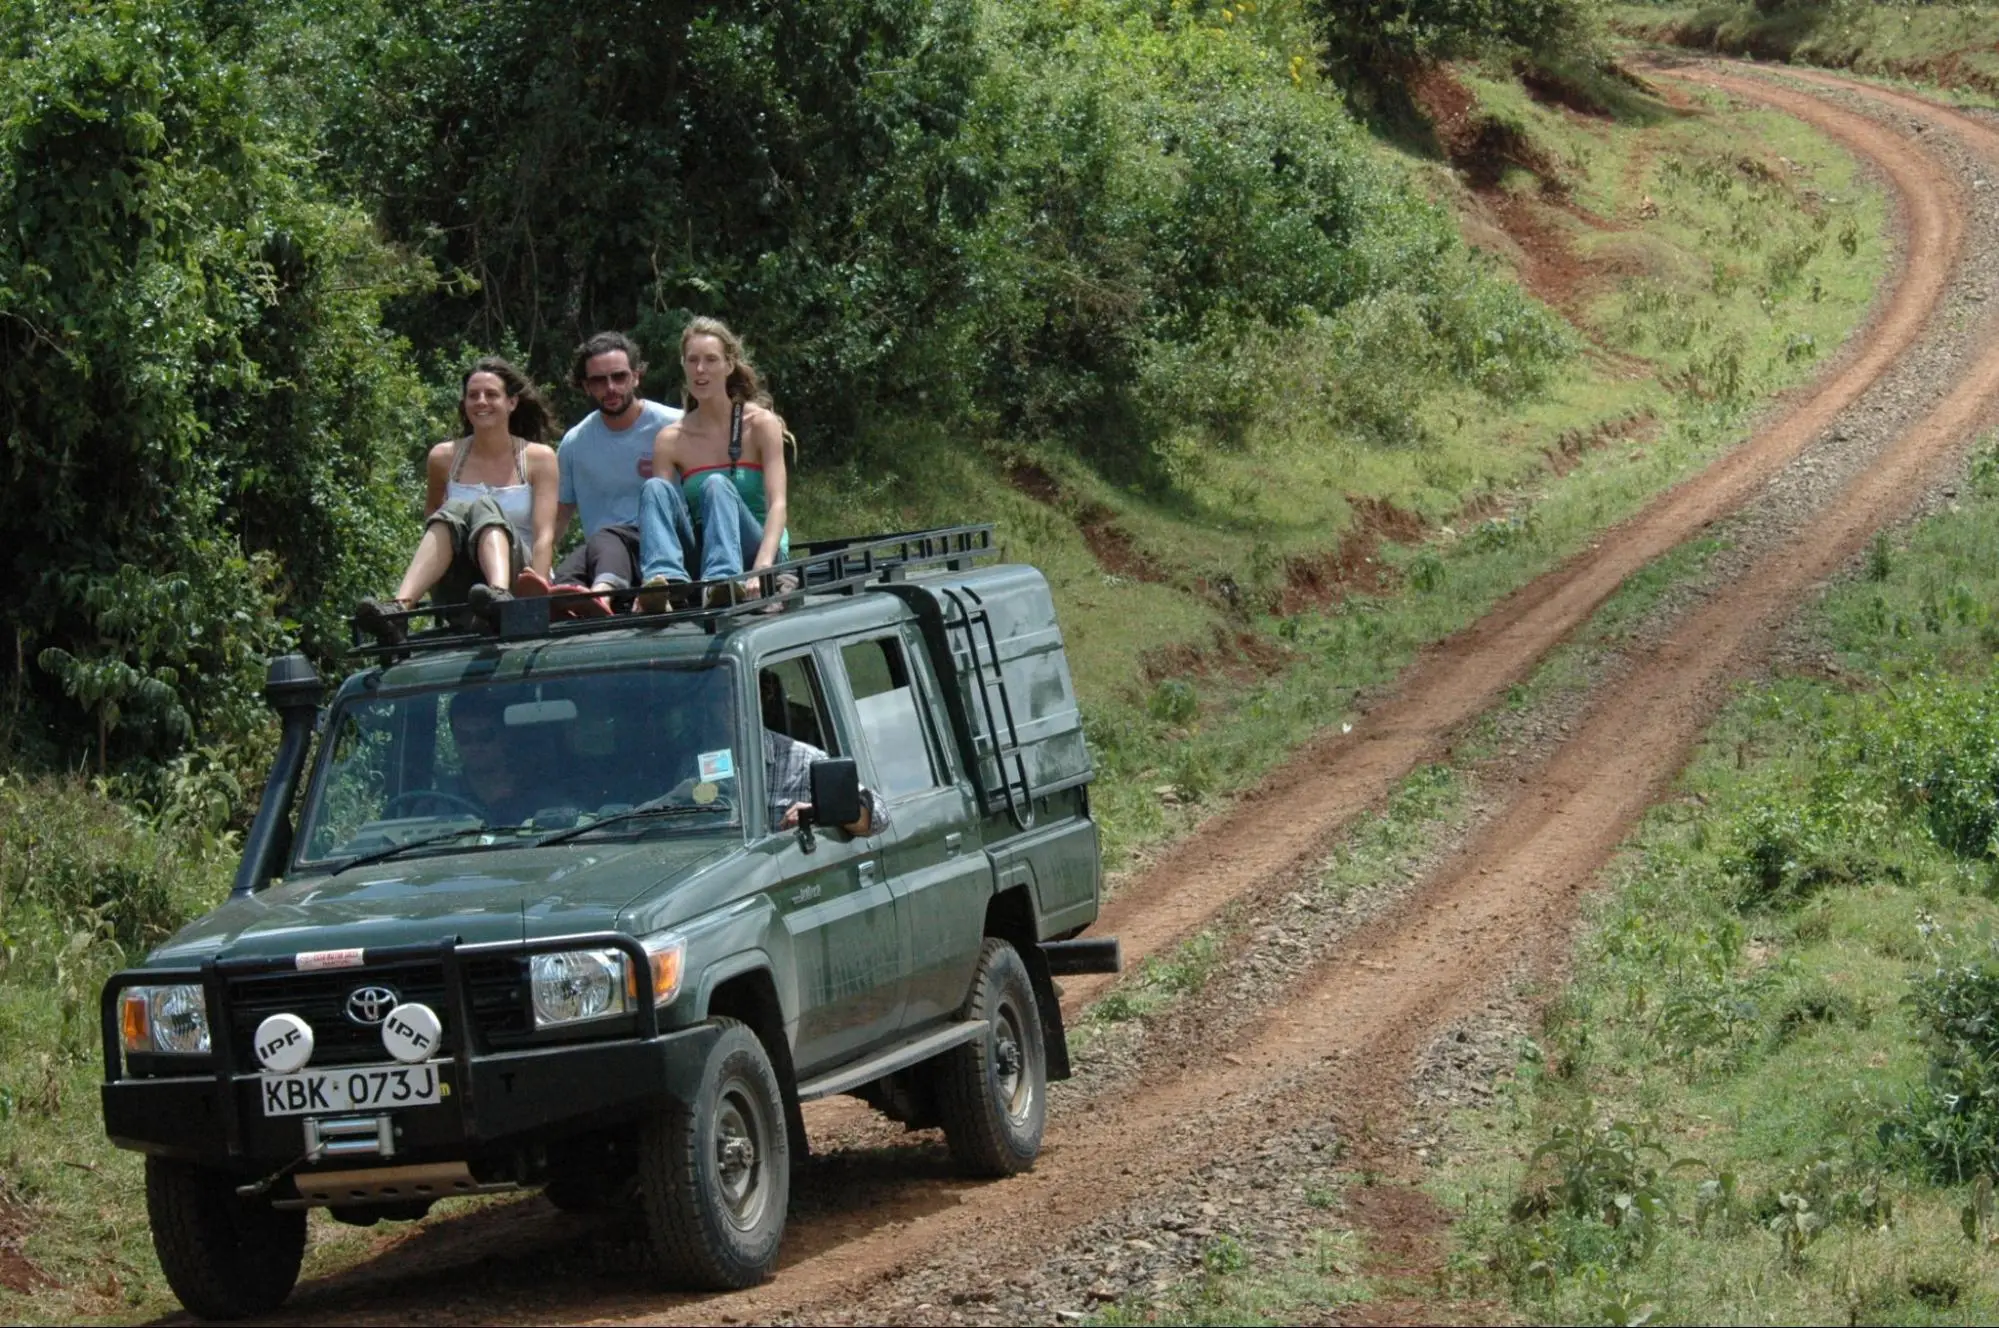 Kenya Safari and beach holidays - Guests on a safari in Kenya.